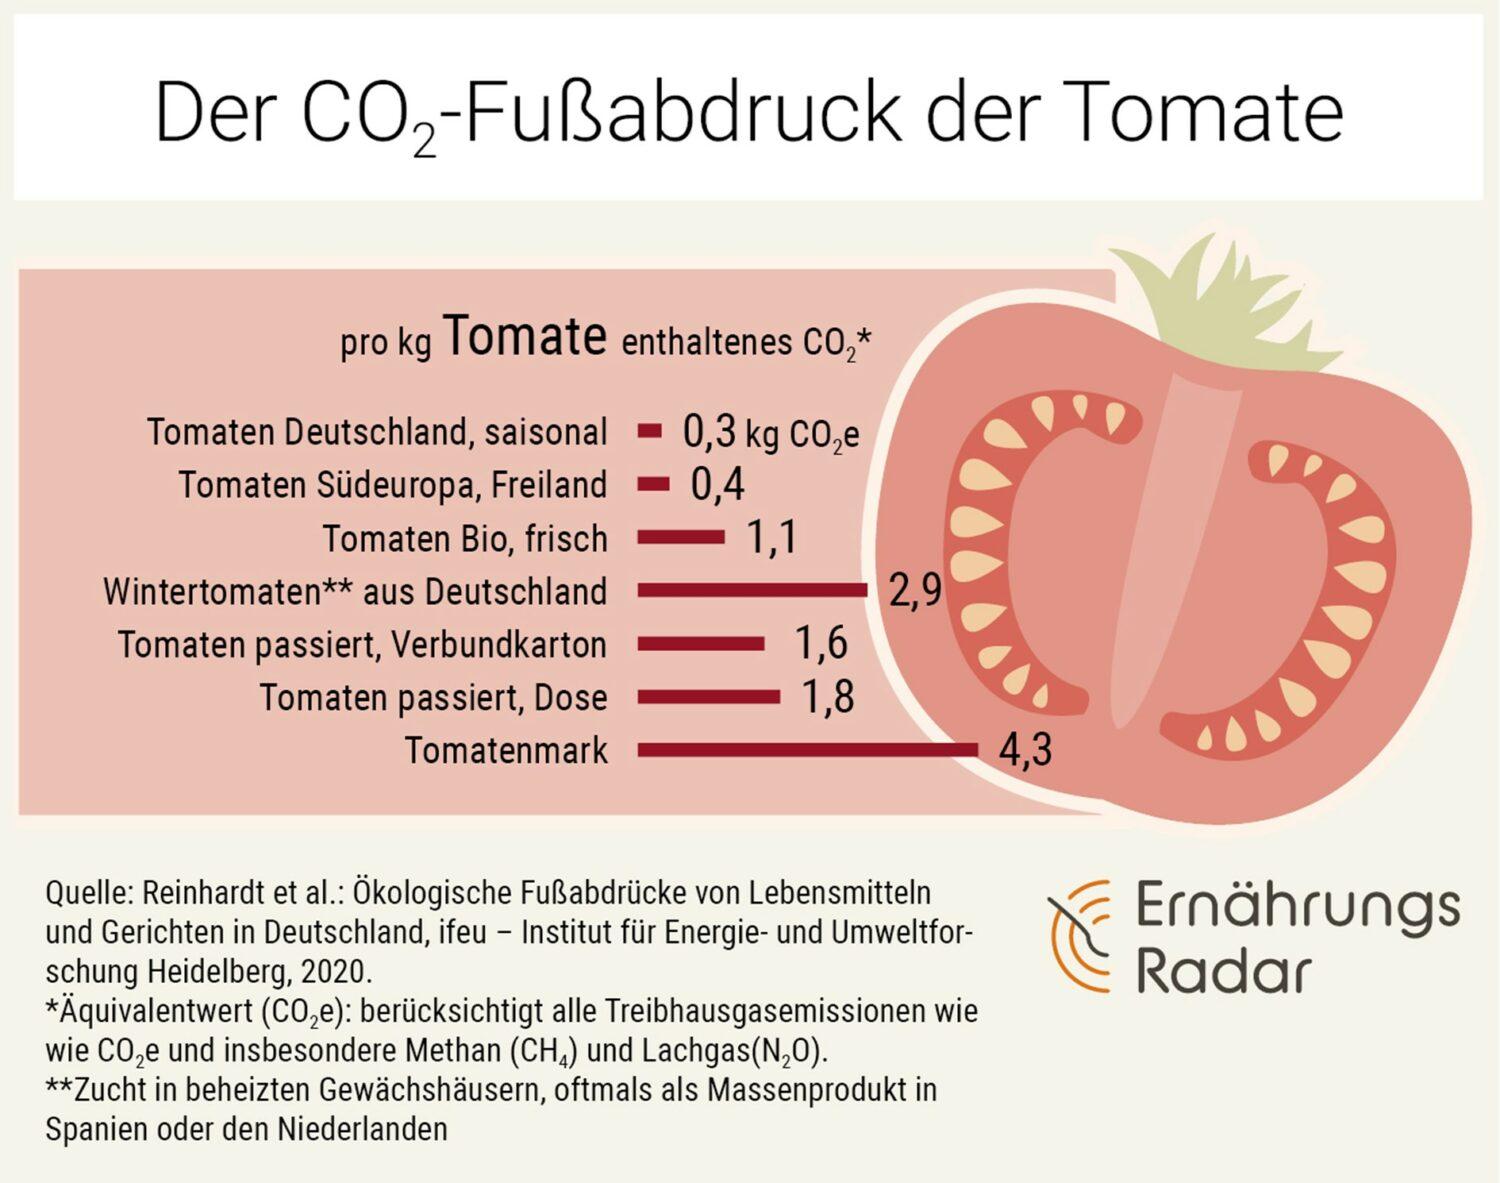 Die Grafik zeigt den Fußabdruck von Tomaten: In der Saison, aus dem Gewächshaus, in Bio-Qualität, passiert und als Tomatenmark.